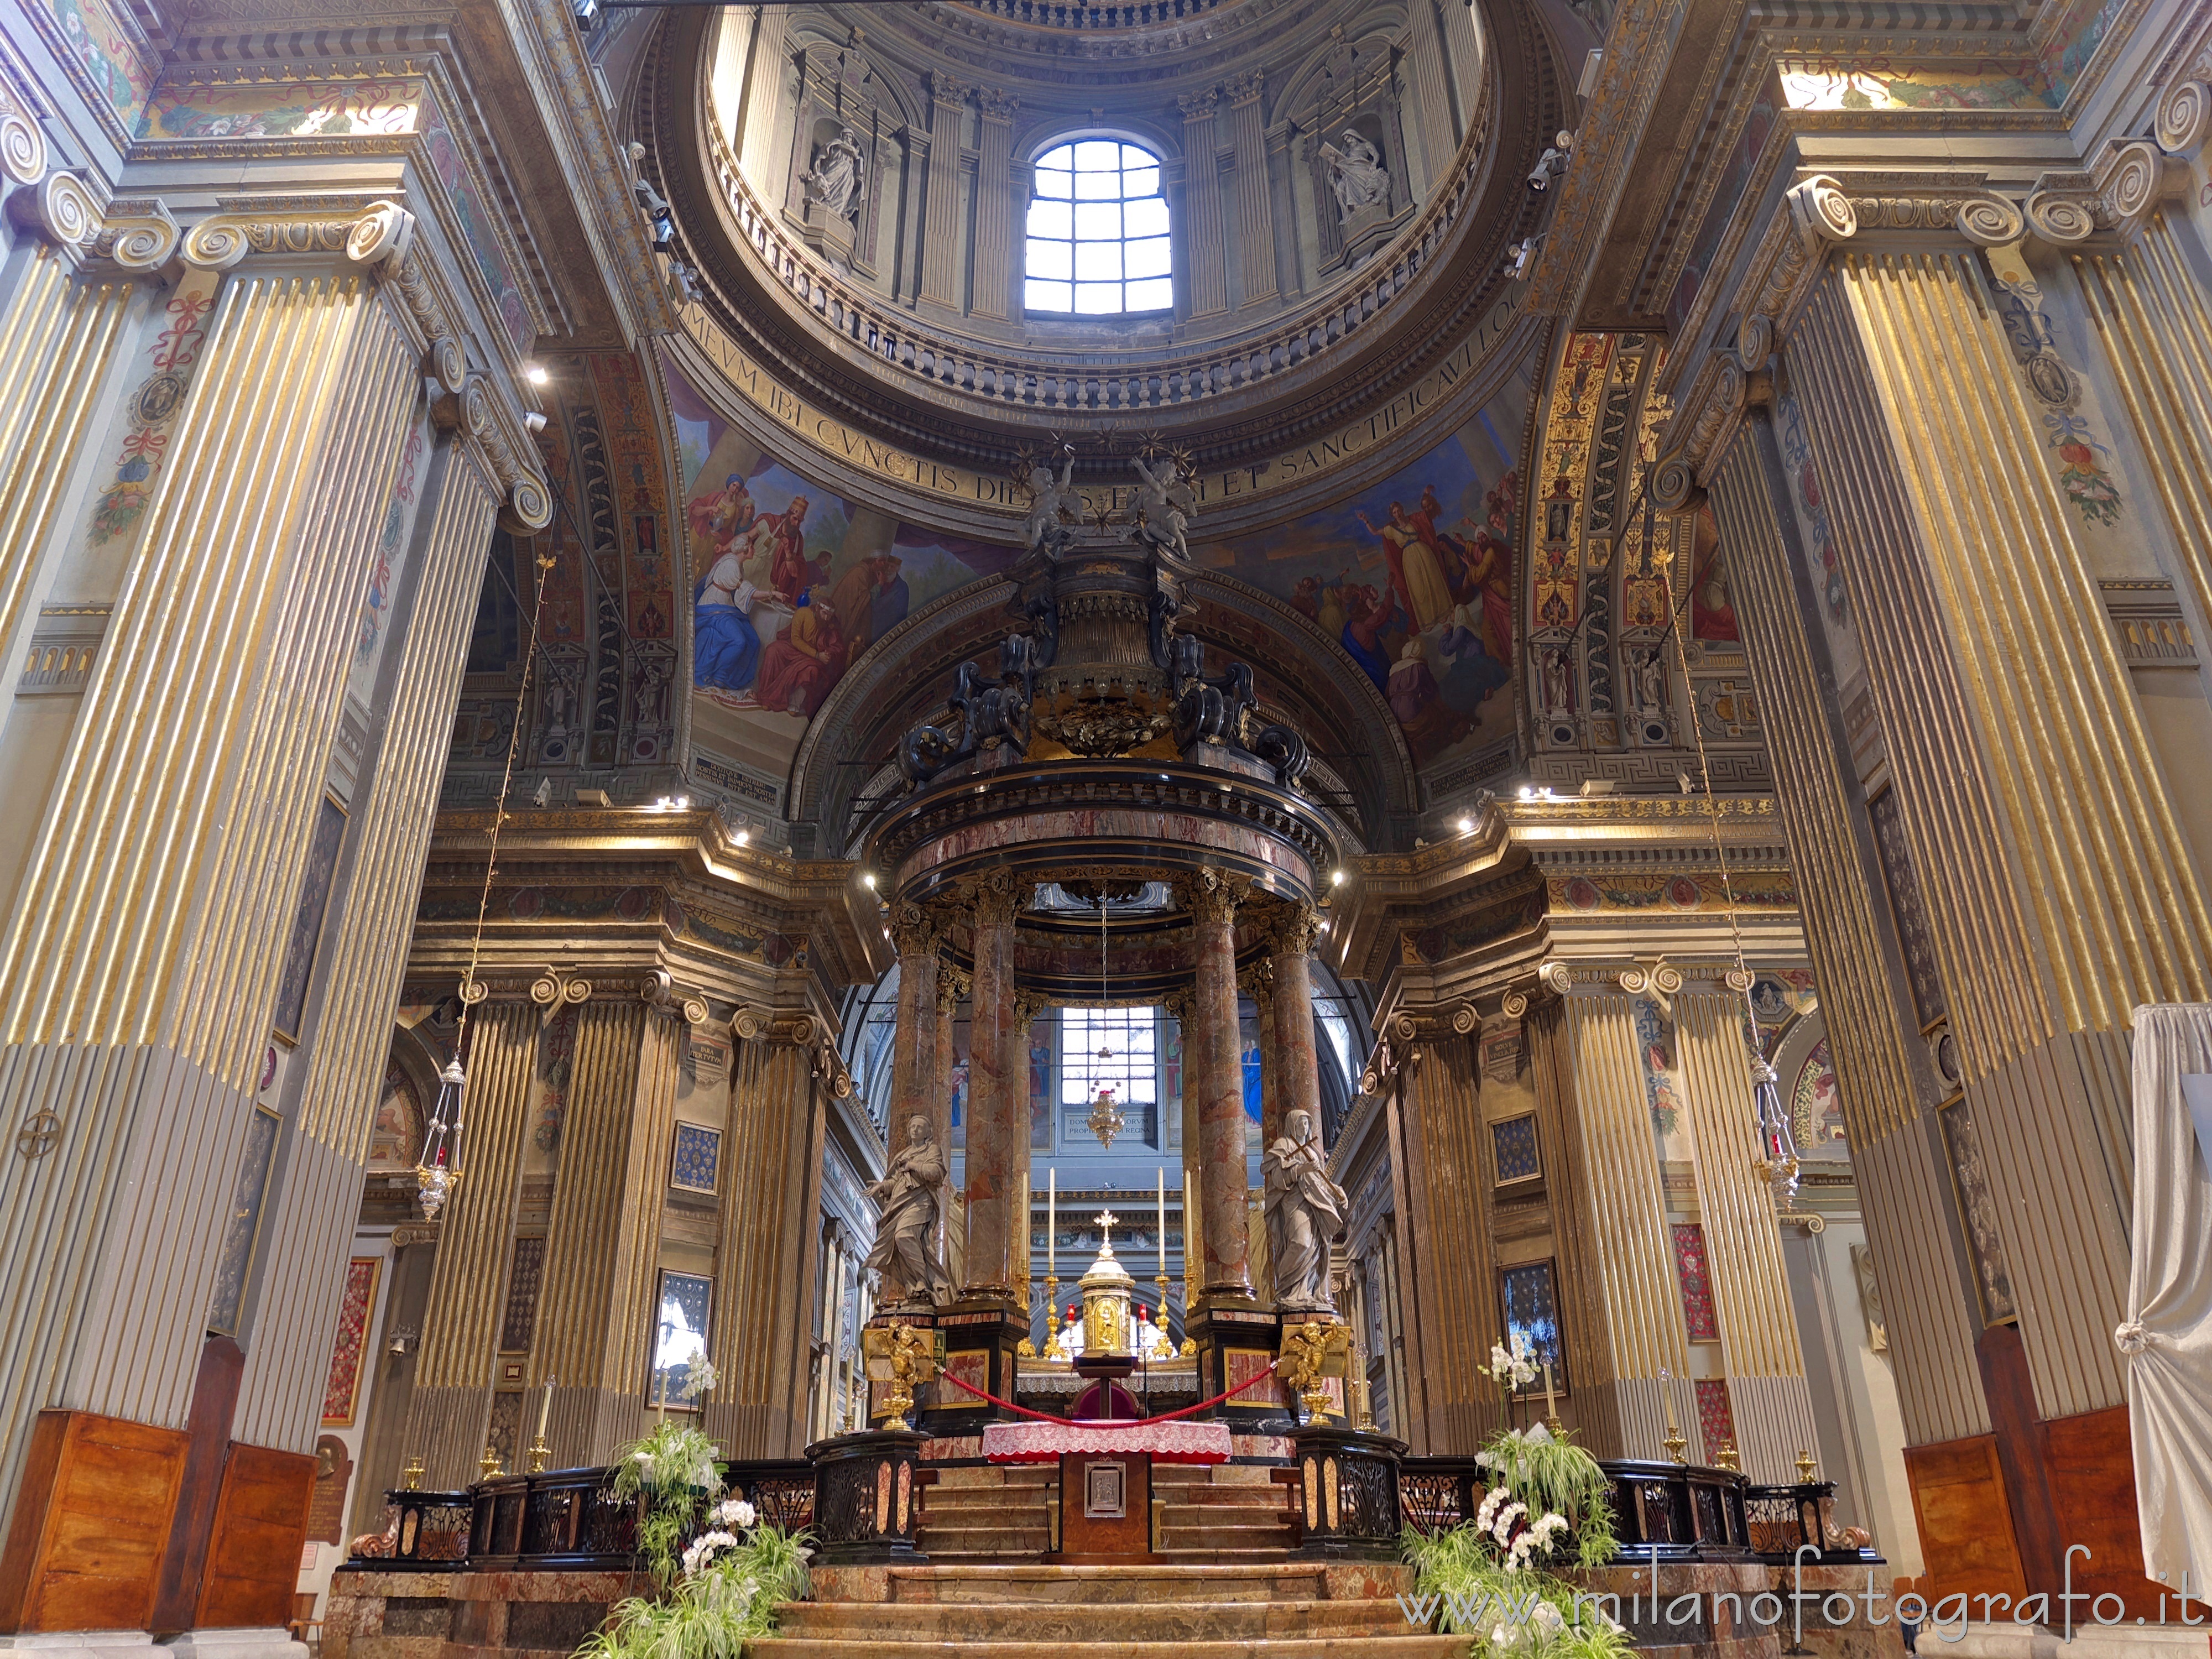 Caravaggio (Bergamo): Altare maggiore della chiesa del Santuario di Caravaggio - Caravaggio (Bergamo)